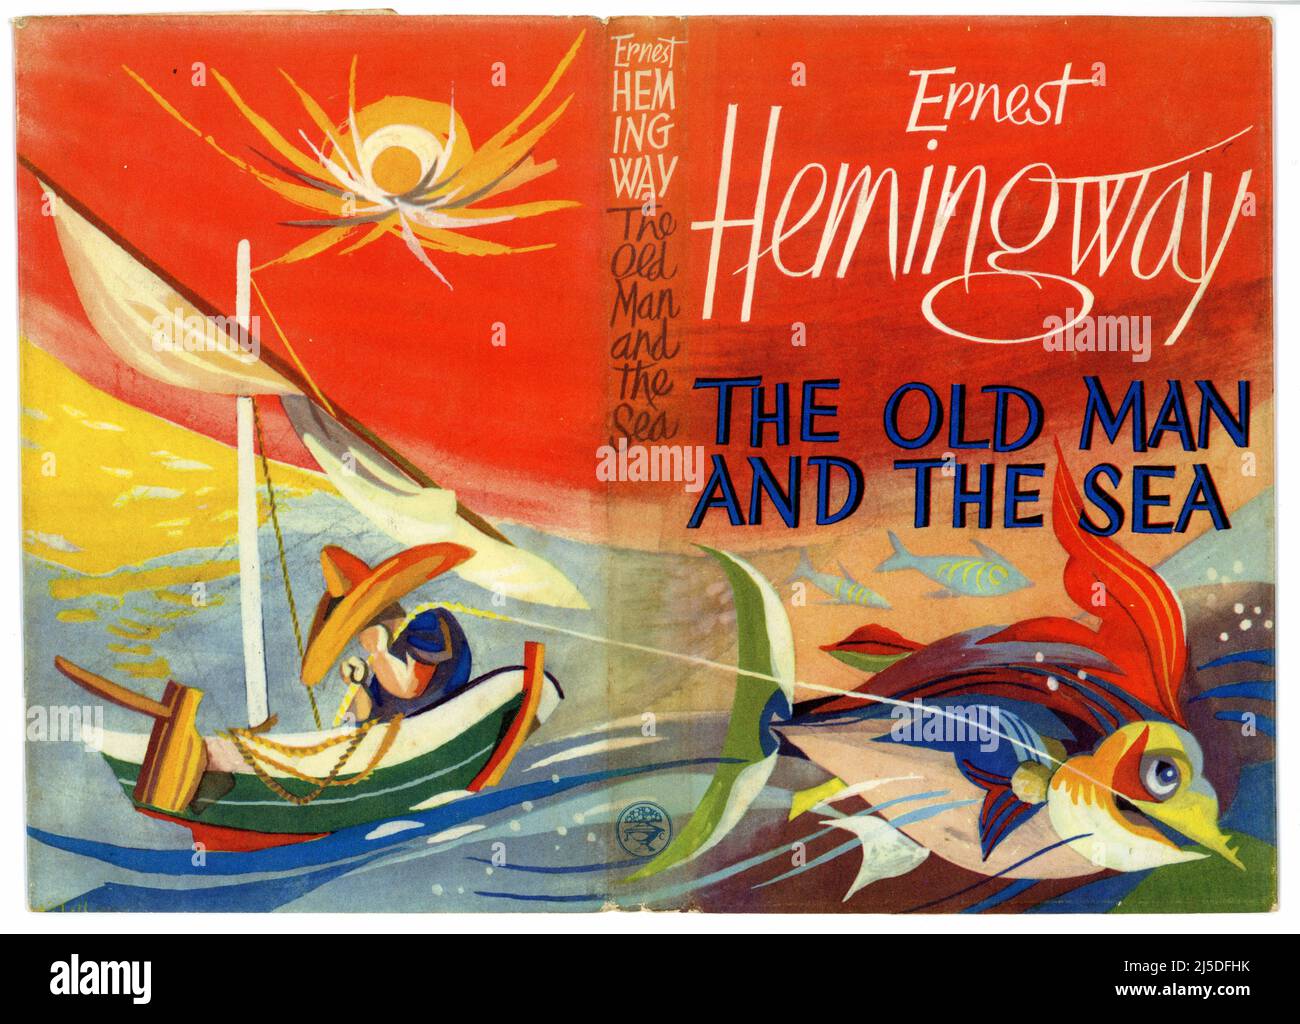 Magnifique original rétro / milieu de siècle couverture de livre illustré de 'l'ancien homme et la mer', publié en 1952 écrit par le célèbre auteur américain, Ernest Hemingway. Première publication britannique. Banque D'Images